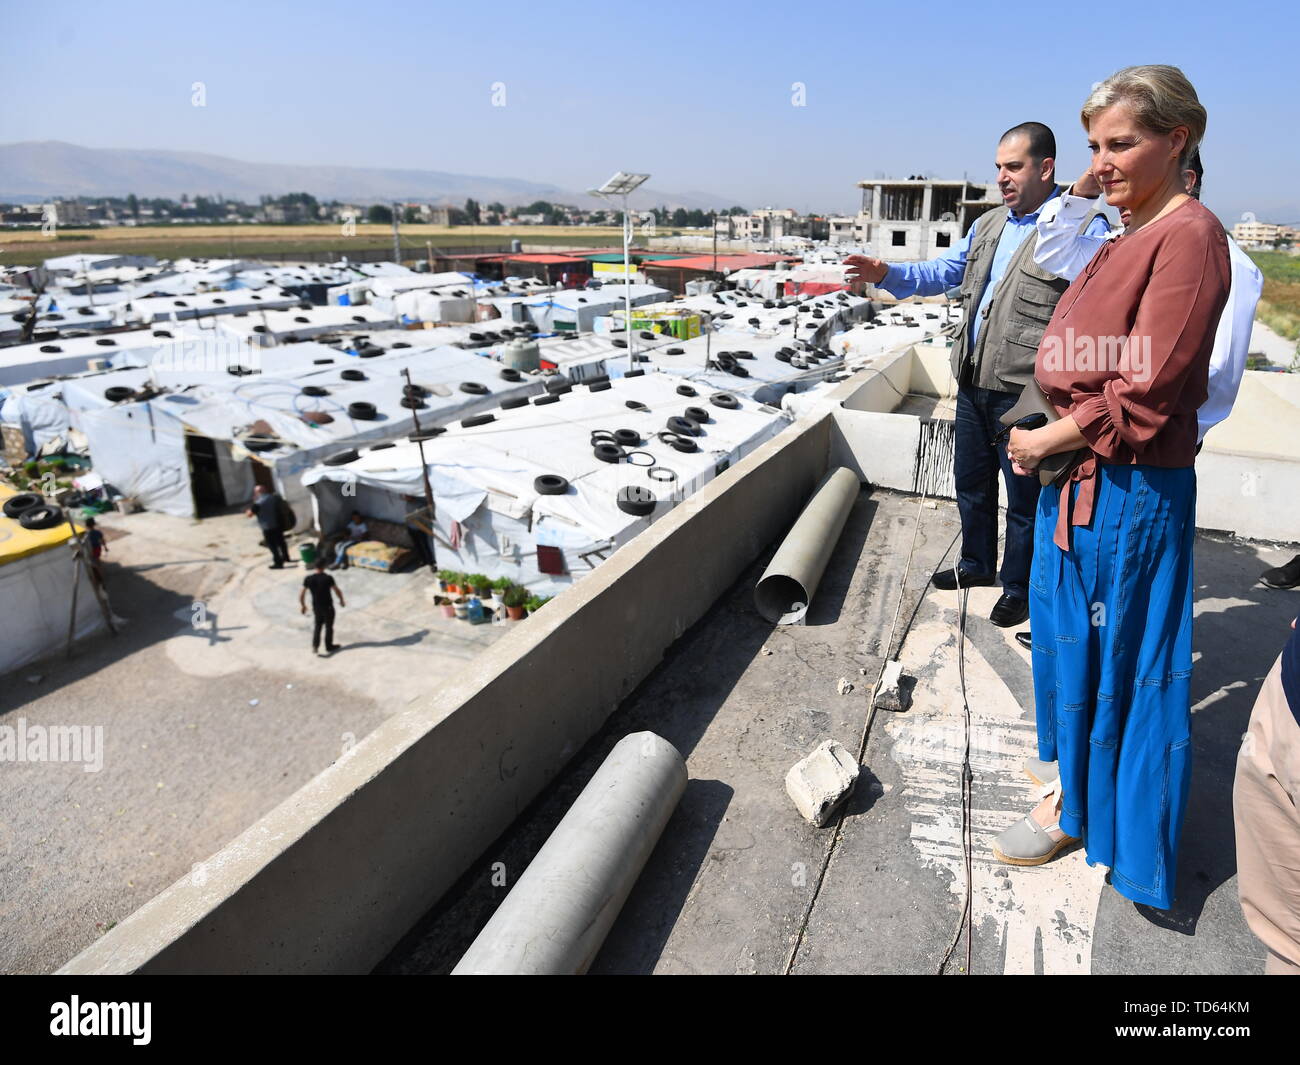 Die Gräfin von Wessex sieht bei einem informellen tented Siedlung, die Häuser von Flüchtlingen in den Libanon von syrischem Konflikt vertrieben, im Bekaatal, Libanon, während der ersten offiziellen königlichen Besuch des Landes. Stockfoto